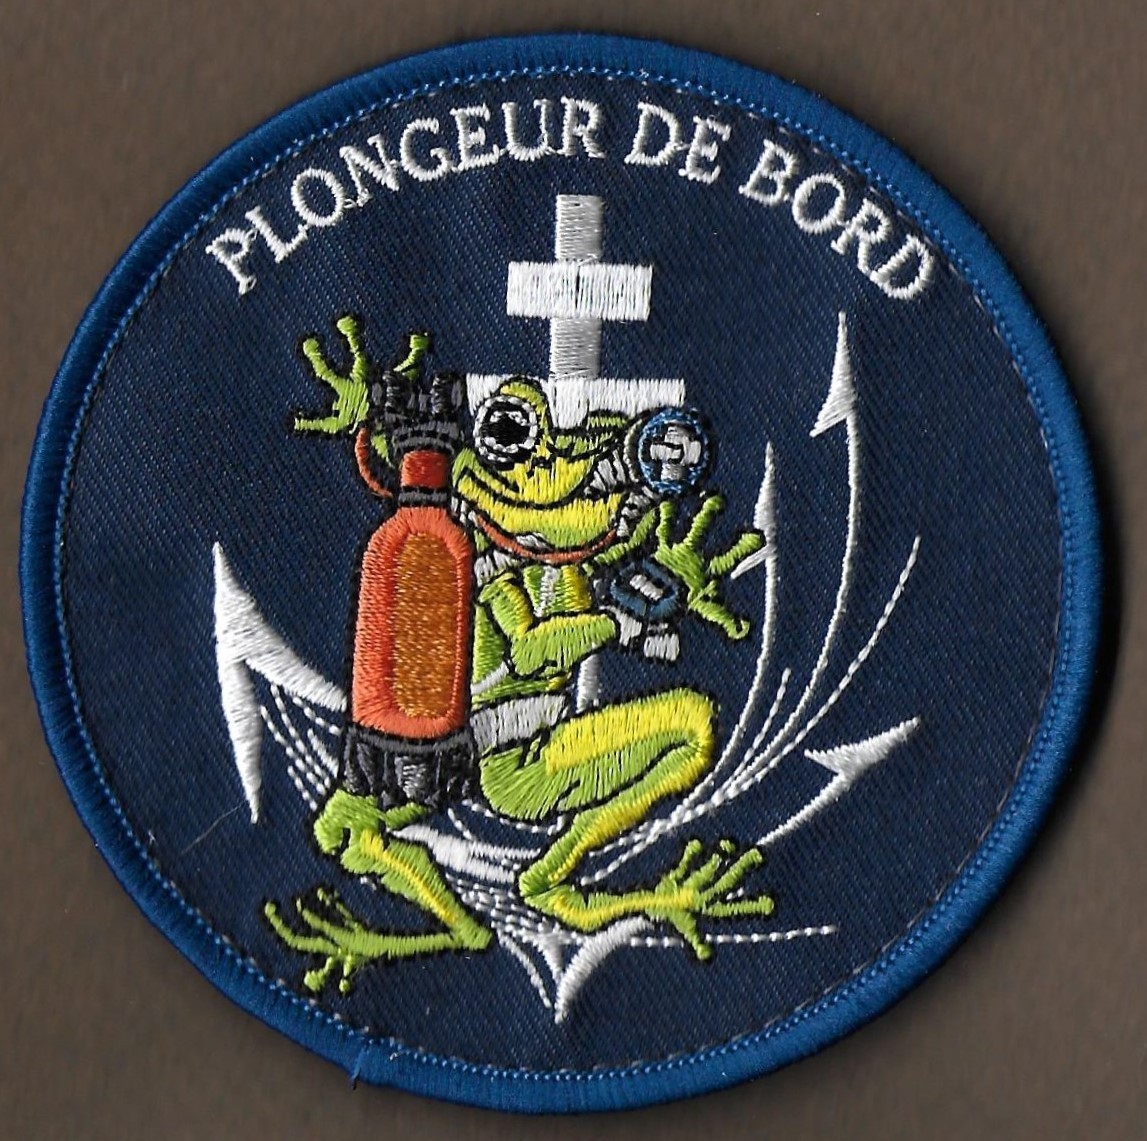 PA Charles de Gaulle - Plongeur - mod 4